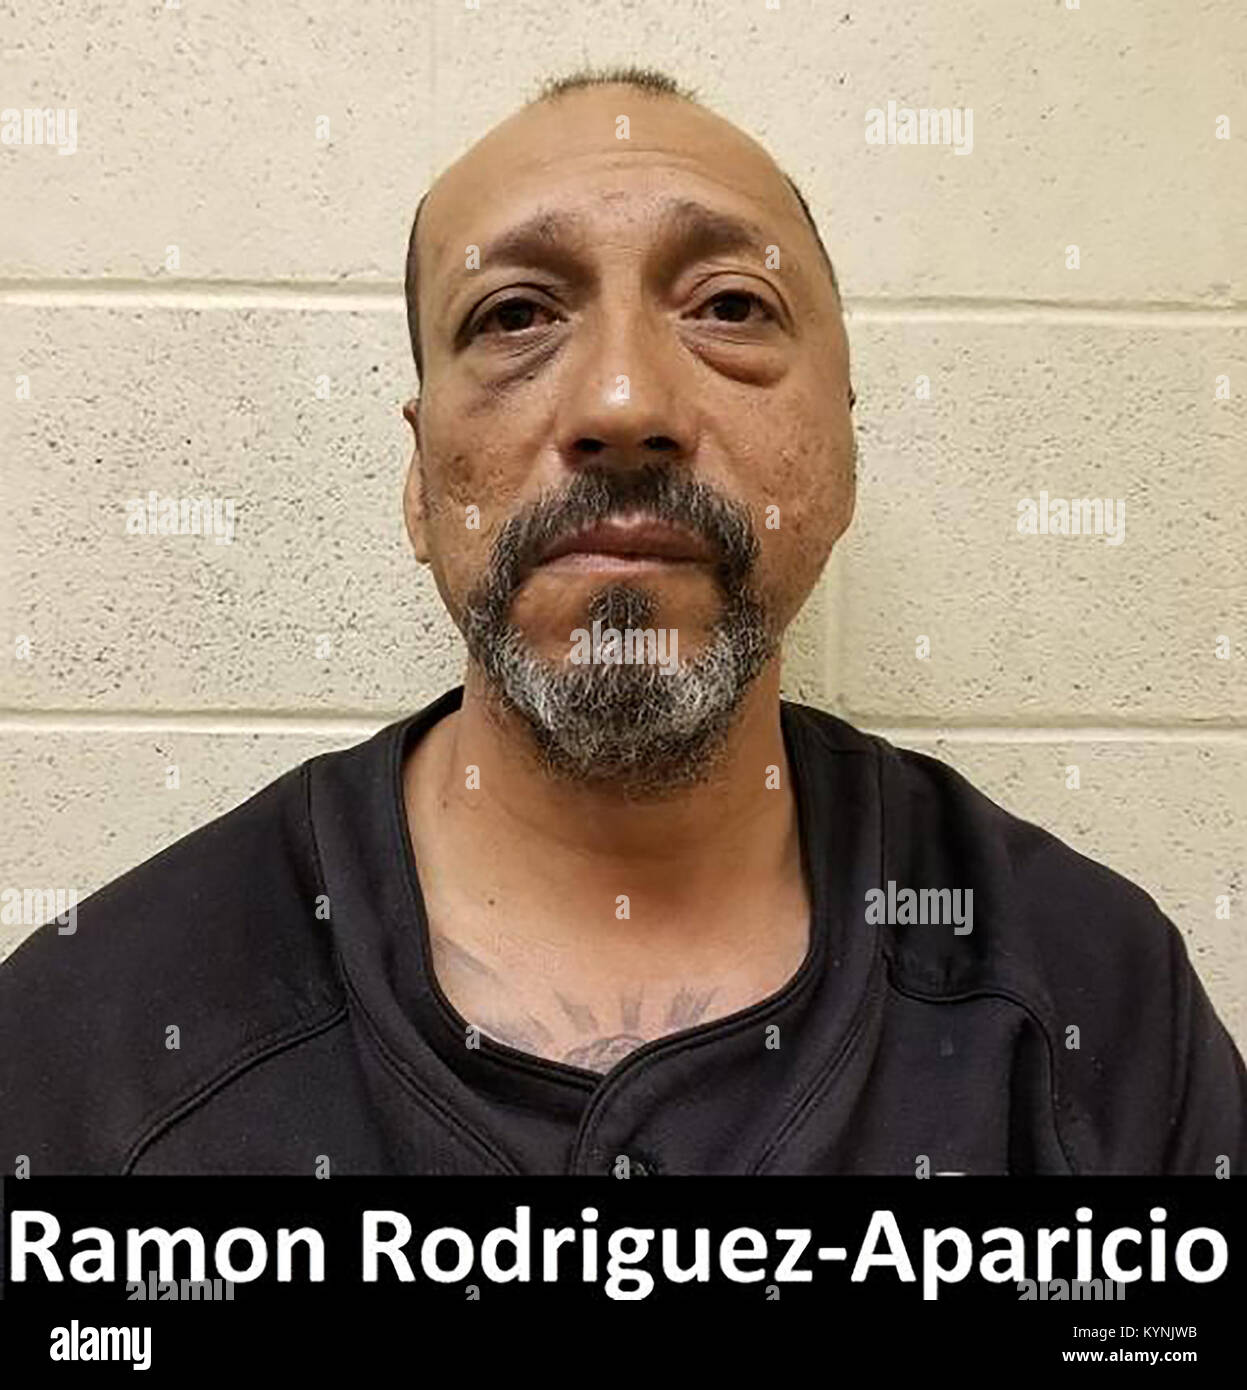 TUCSON, Ariz - Tucson Sektor Border Patrol Agents in den drei Punkte sub zugewiesen - Bahnhof festgenommen neun illegale Ausländer Samstag, später Identifizieren einer von Ihnen als zuvor MS-13 Bandenmitglieder mit mehreren Kapitalverbrechenüberzeugungen deportiert. Während der Aufnahme überprüft, Agenten identifiziert ein 45 Jahre alter Mann aus El Salvador in die Gruppe als Ramon Rodriguez-Aparicio, einer MS-13 Bandenmitglieder mit umfangreiche kriminelle Geschichte in Kalifornien. Rodriguez im Bundesschutz bis zur Strafverfolgung für kriminelle Einwanderung Verletzungen einschließlich Wiedereintritt eines verschärft Täter bleiben. Foto bereitgestellt von: US-Zoll Stockfoto